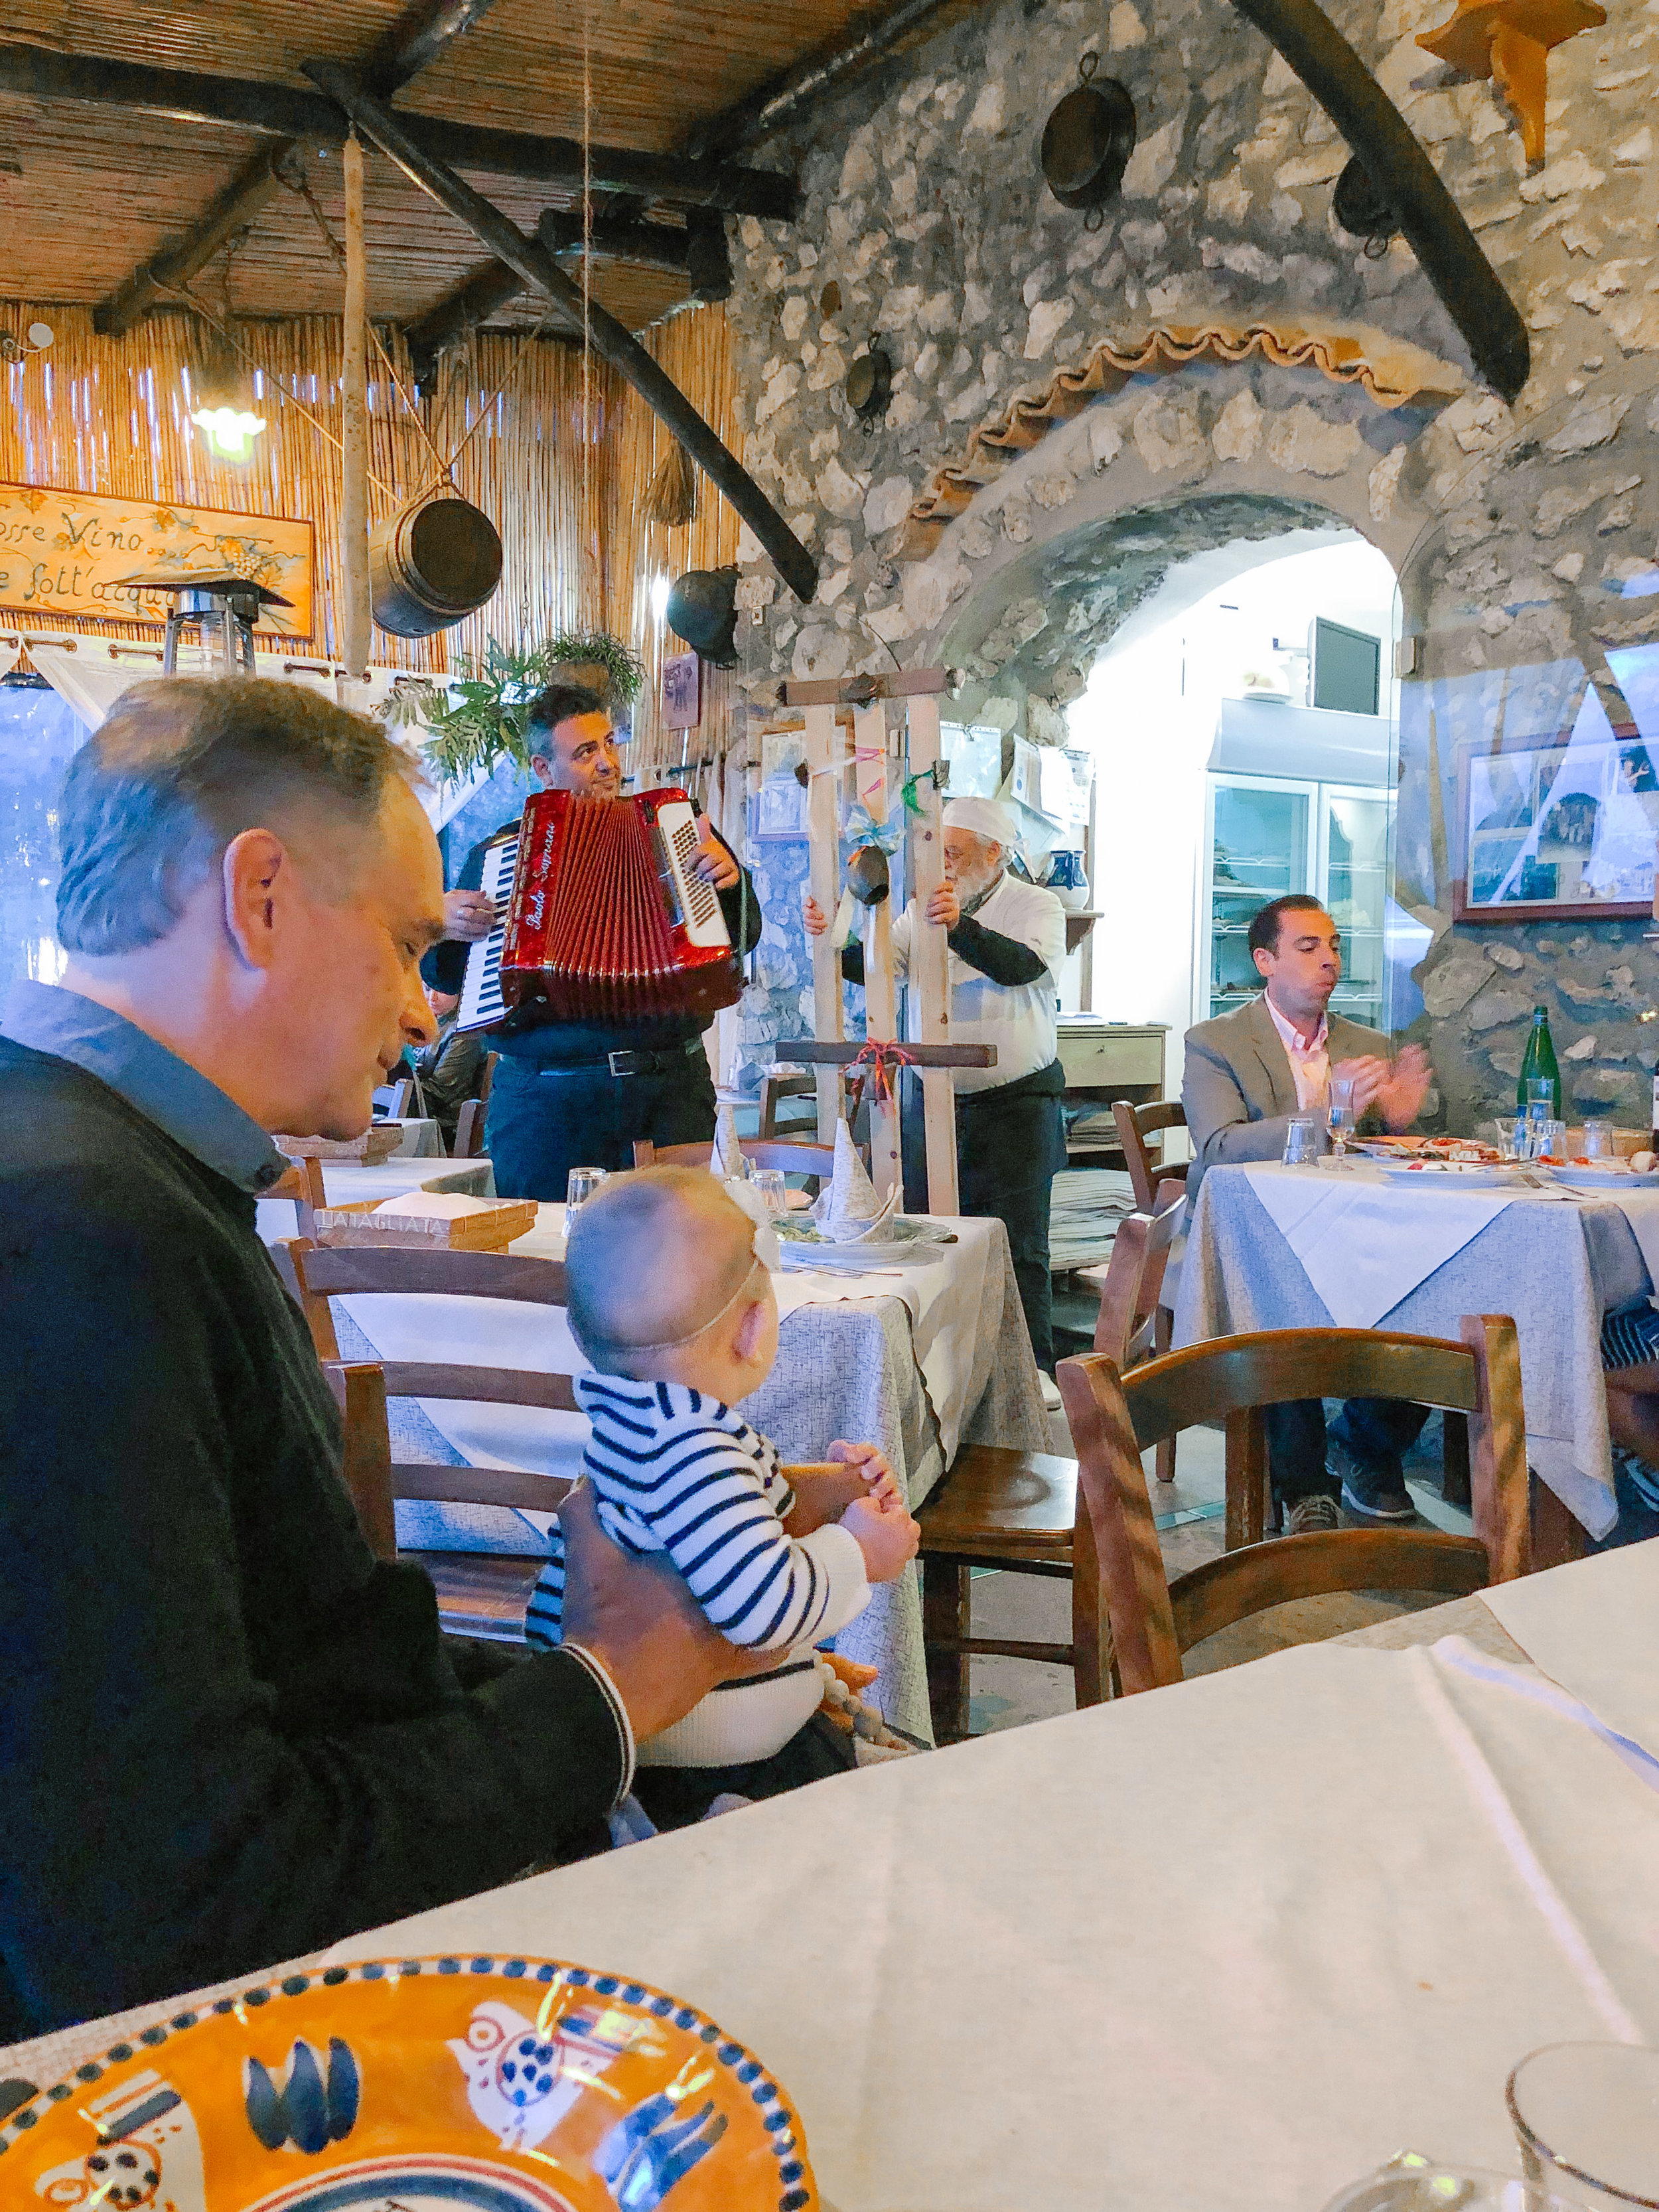 The Best Restaurants in Positano, Italy